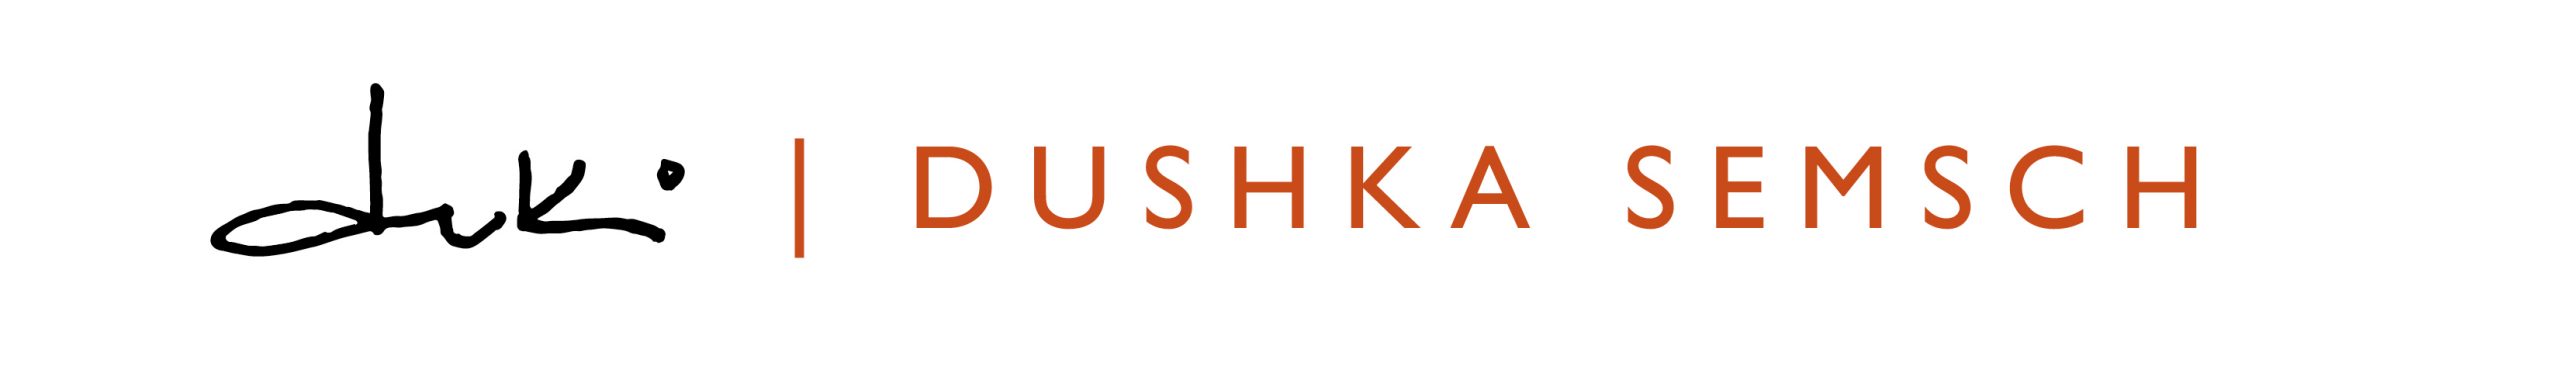 logo DUKI-DUSHKASEMSCH